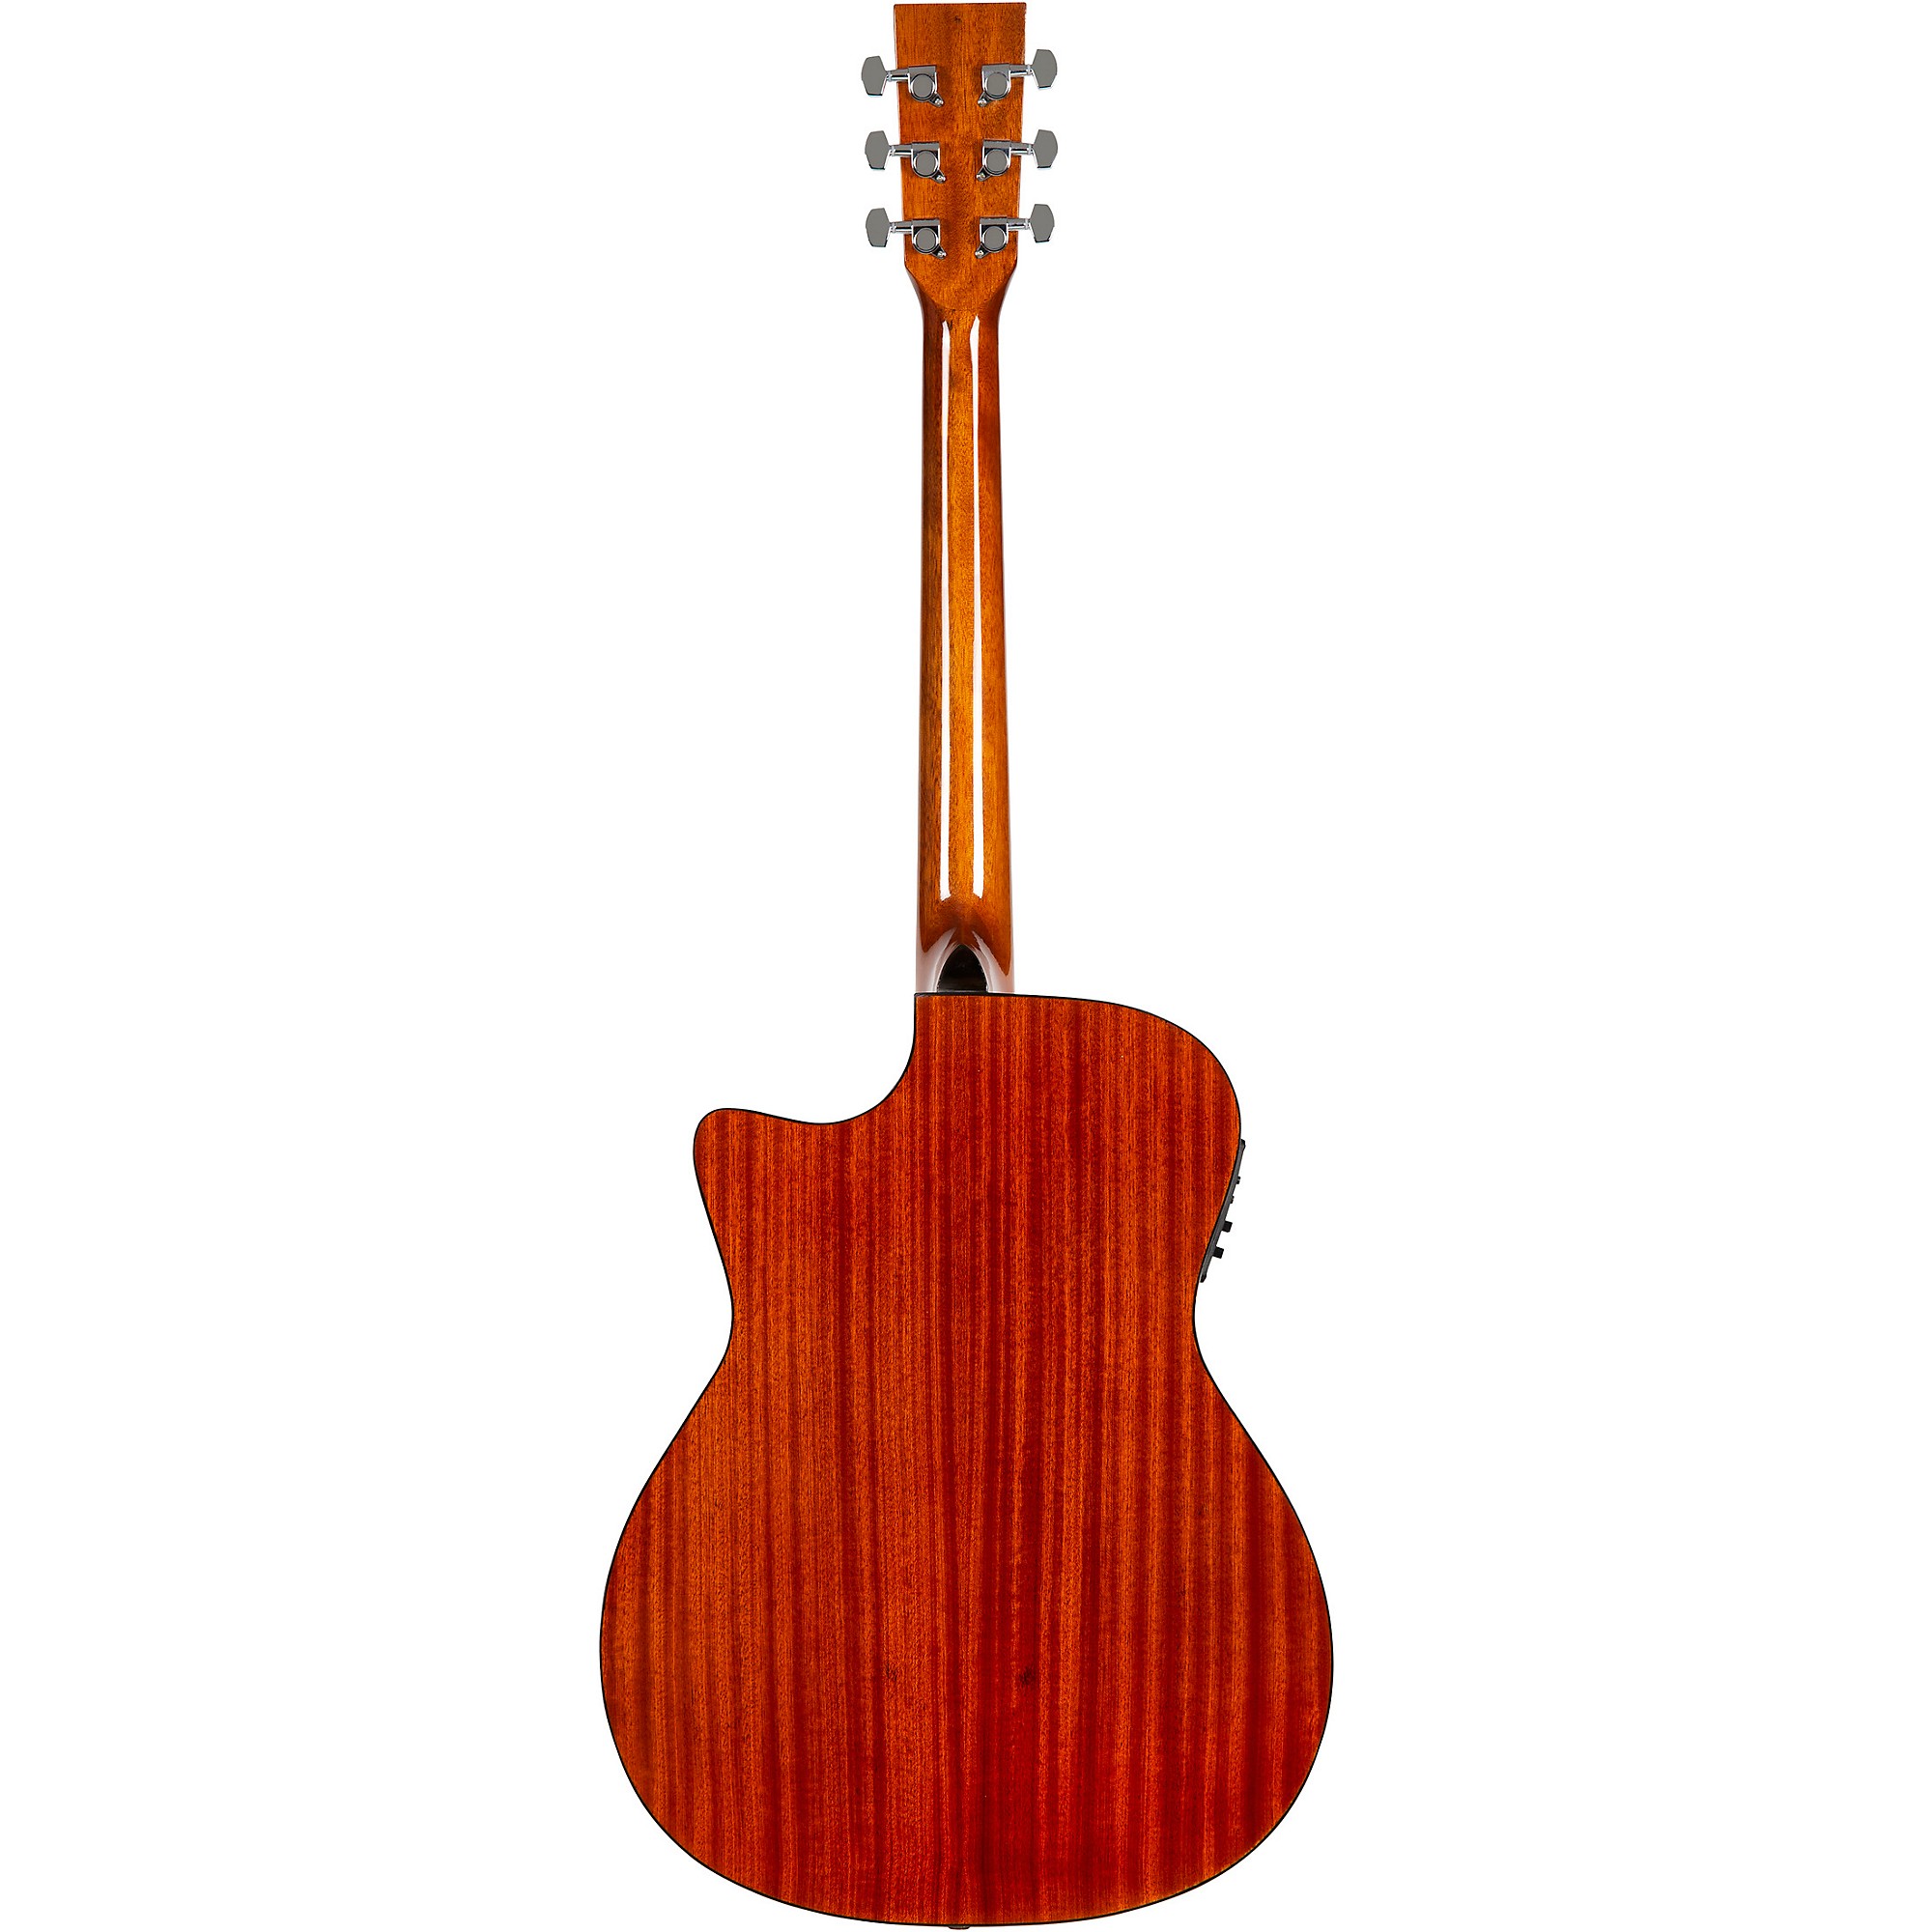 Акустически-электрическая гитара Rogue RA-090 Concert Cutaway из красного дерева lebbon tim eden